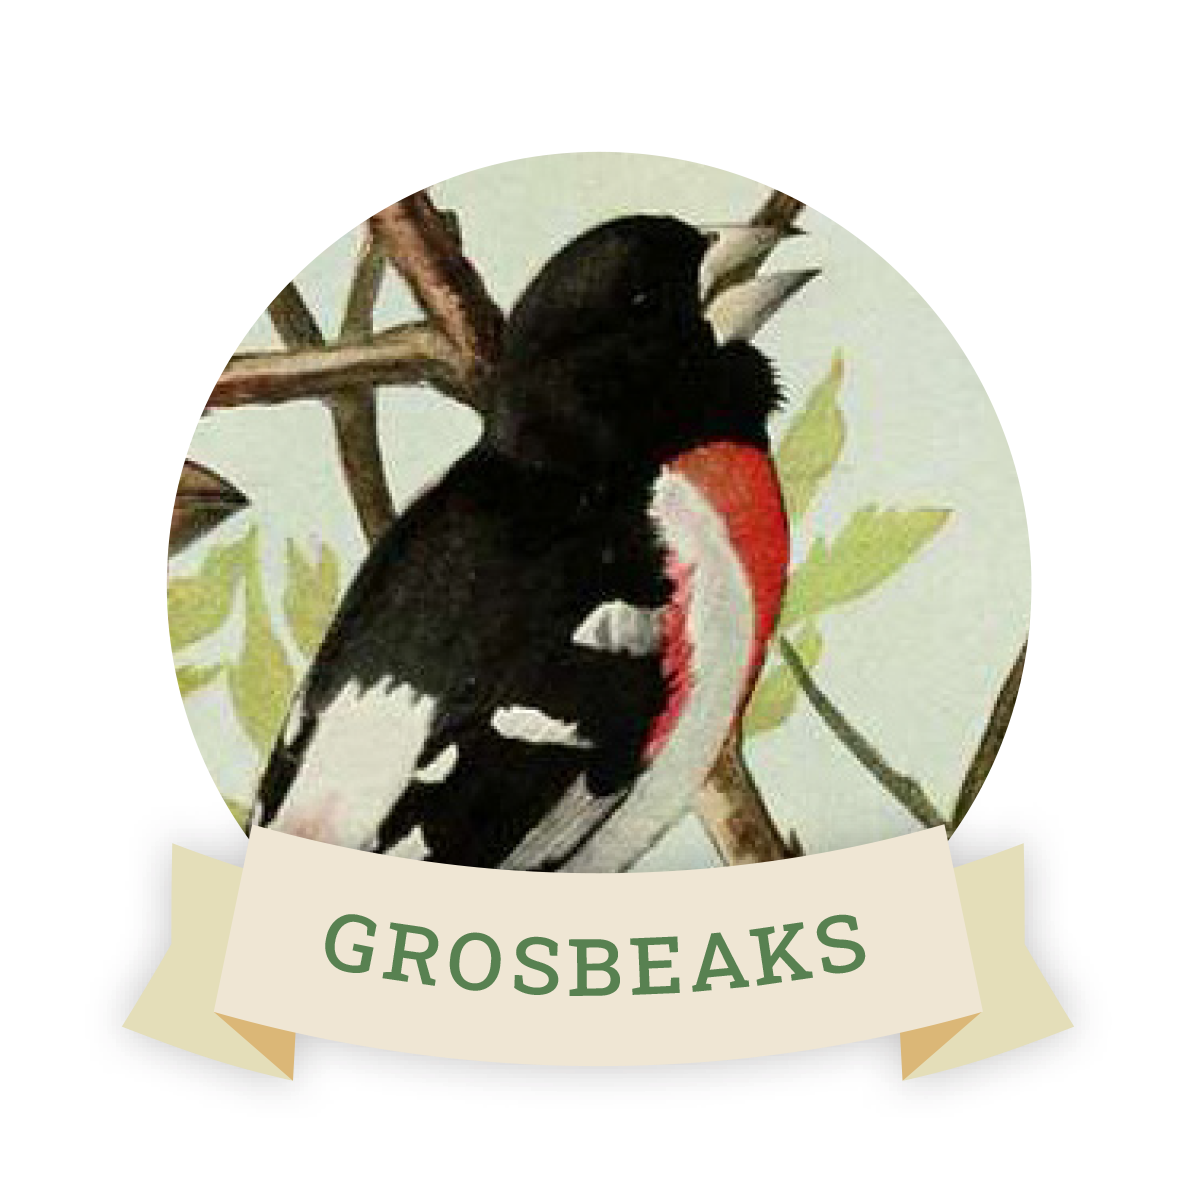 Image of a grosbeak. Links to grosbeak favorite food and feeders.